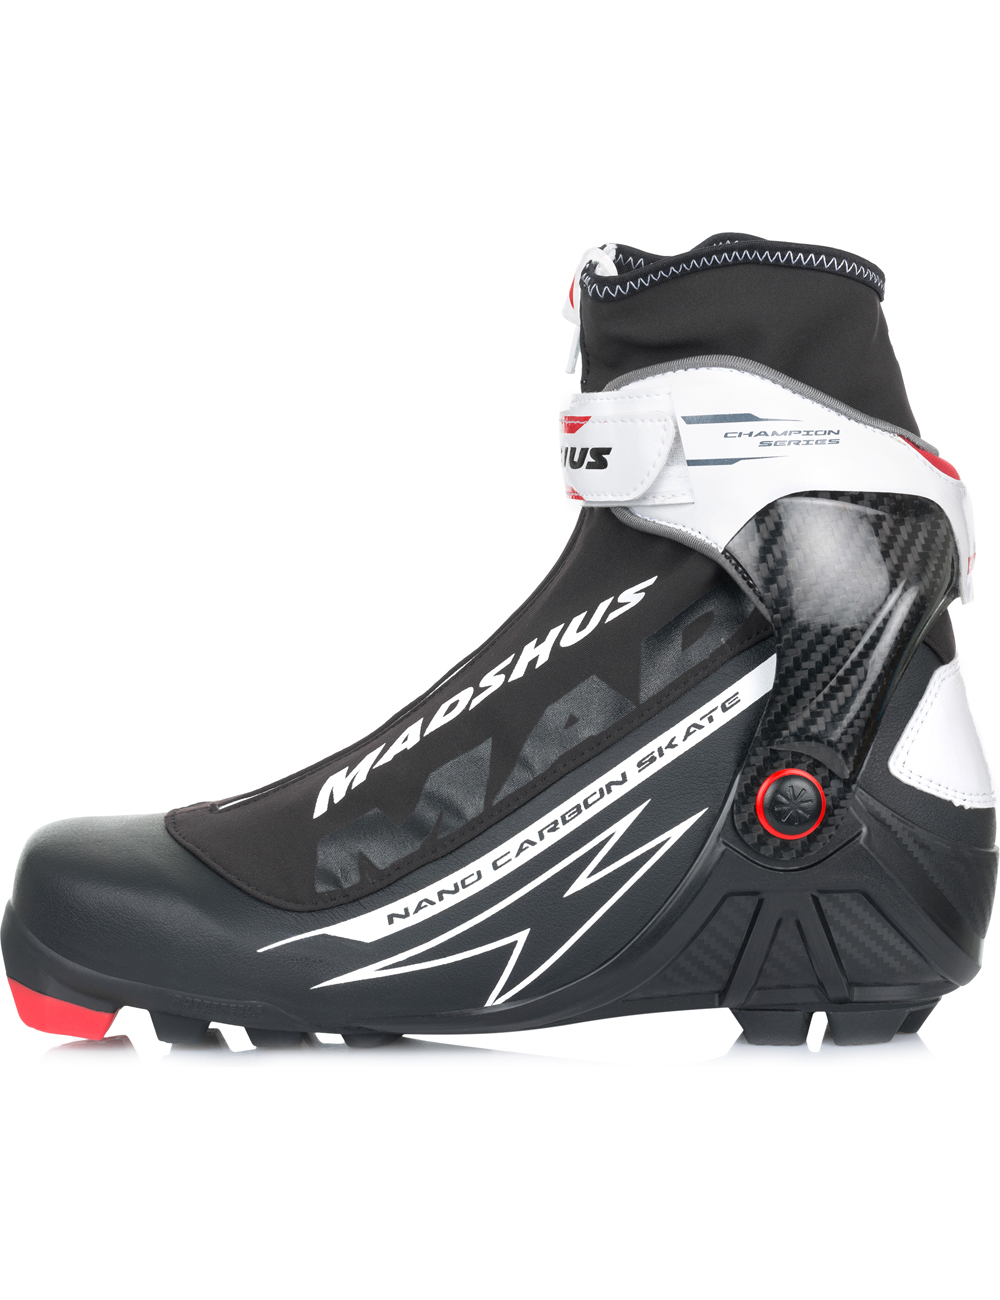 MADSHUS Лыжные ботинки NANO CARBON SKATE Артикул: N174001